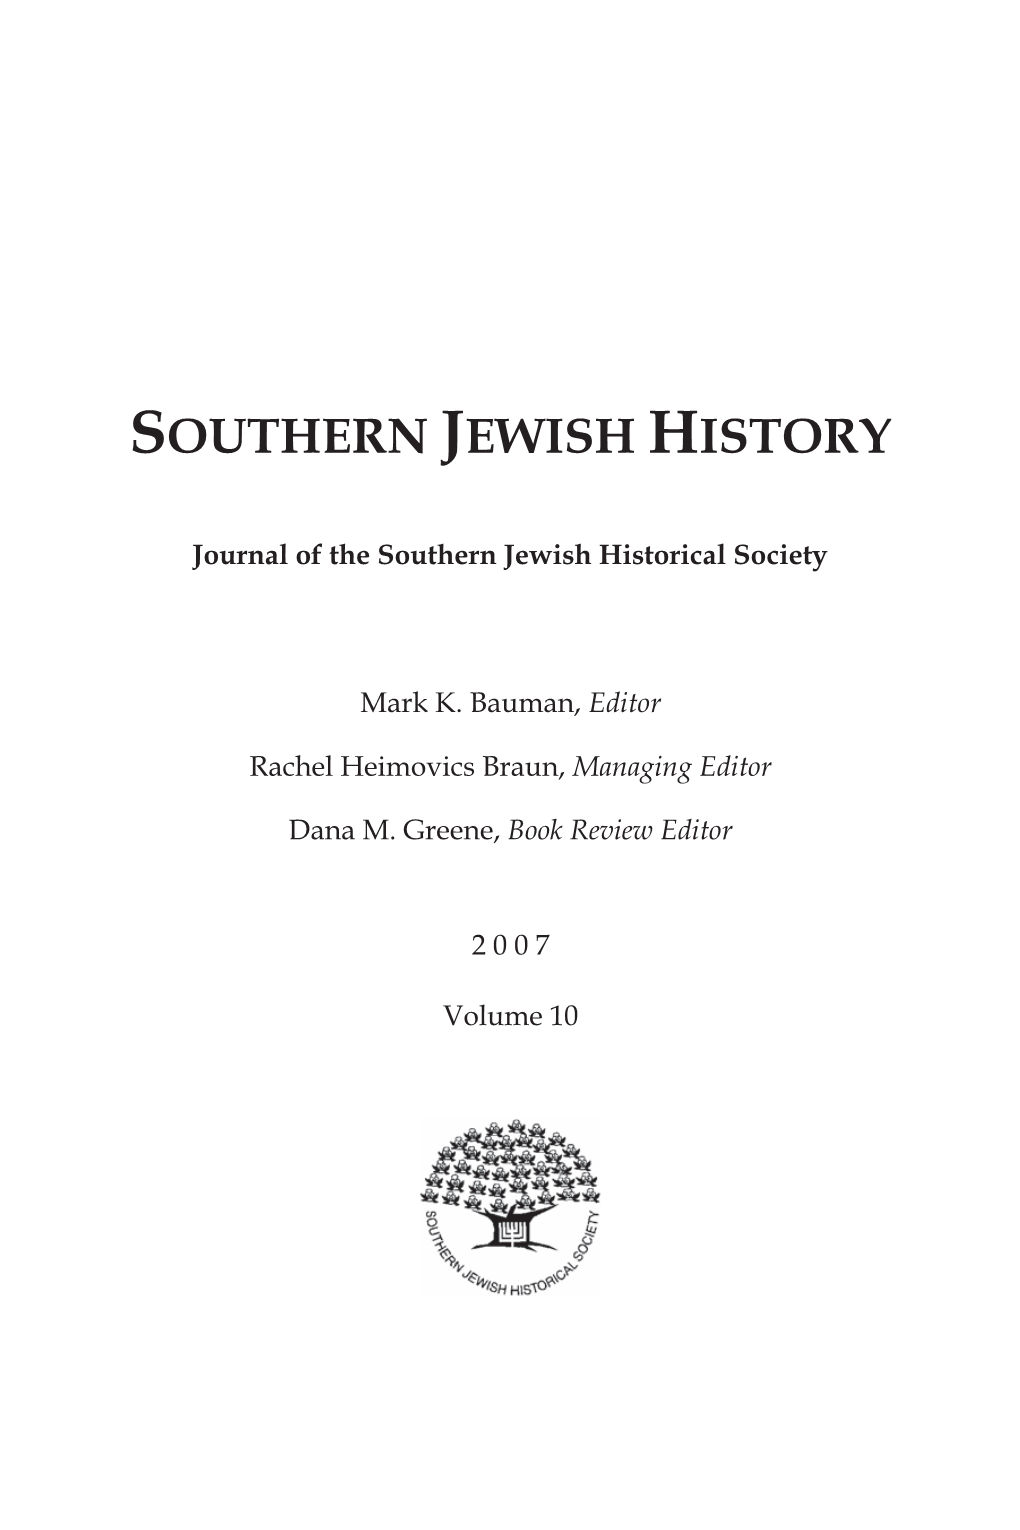 Southern Jewish History